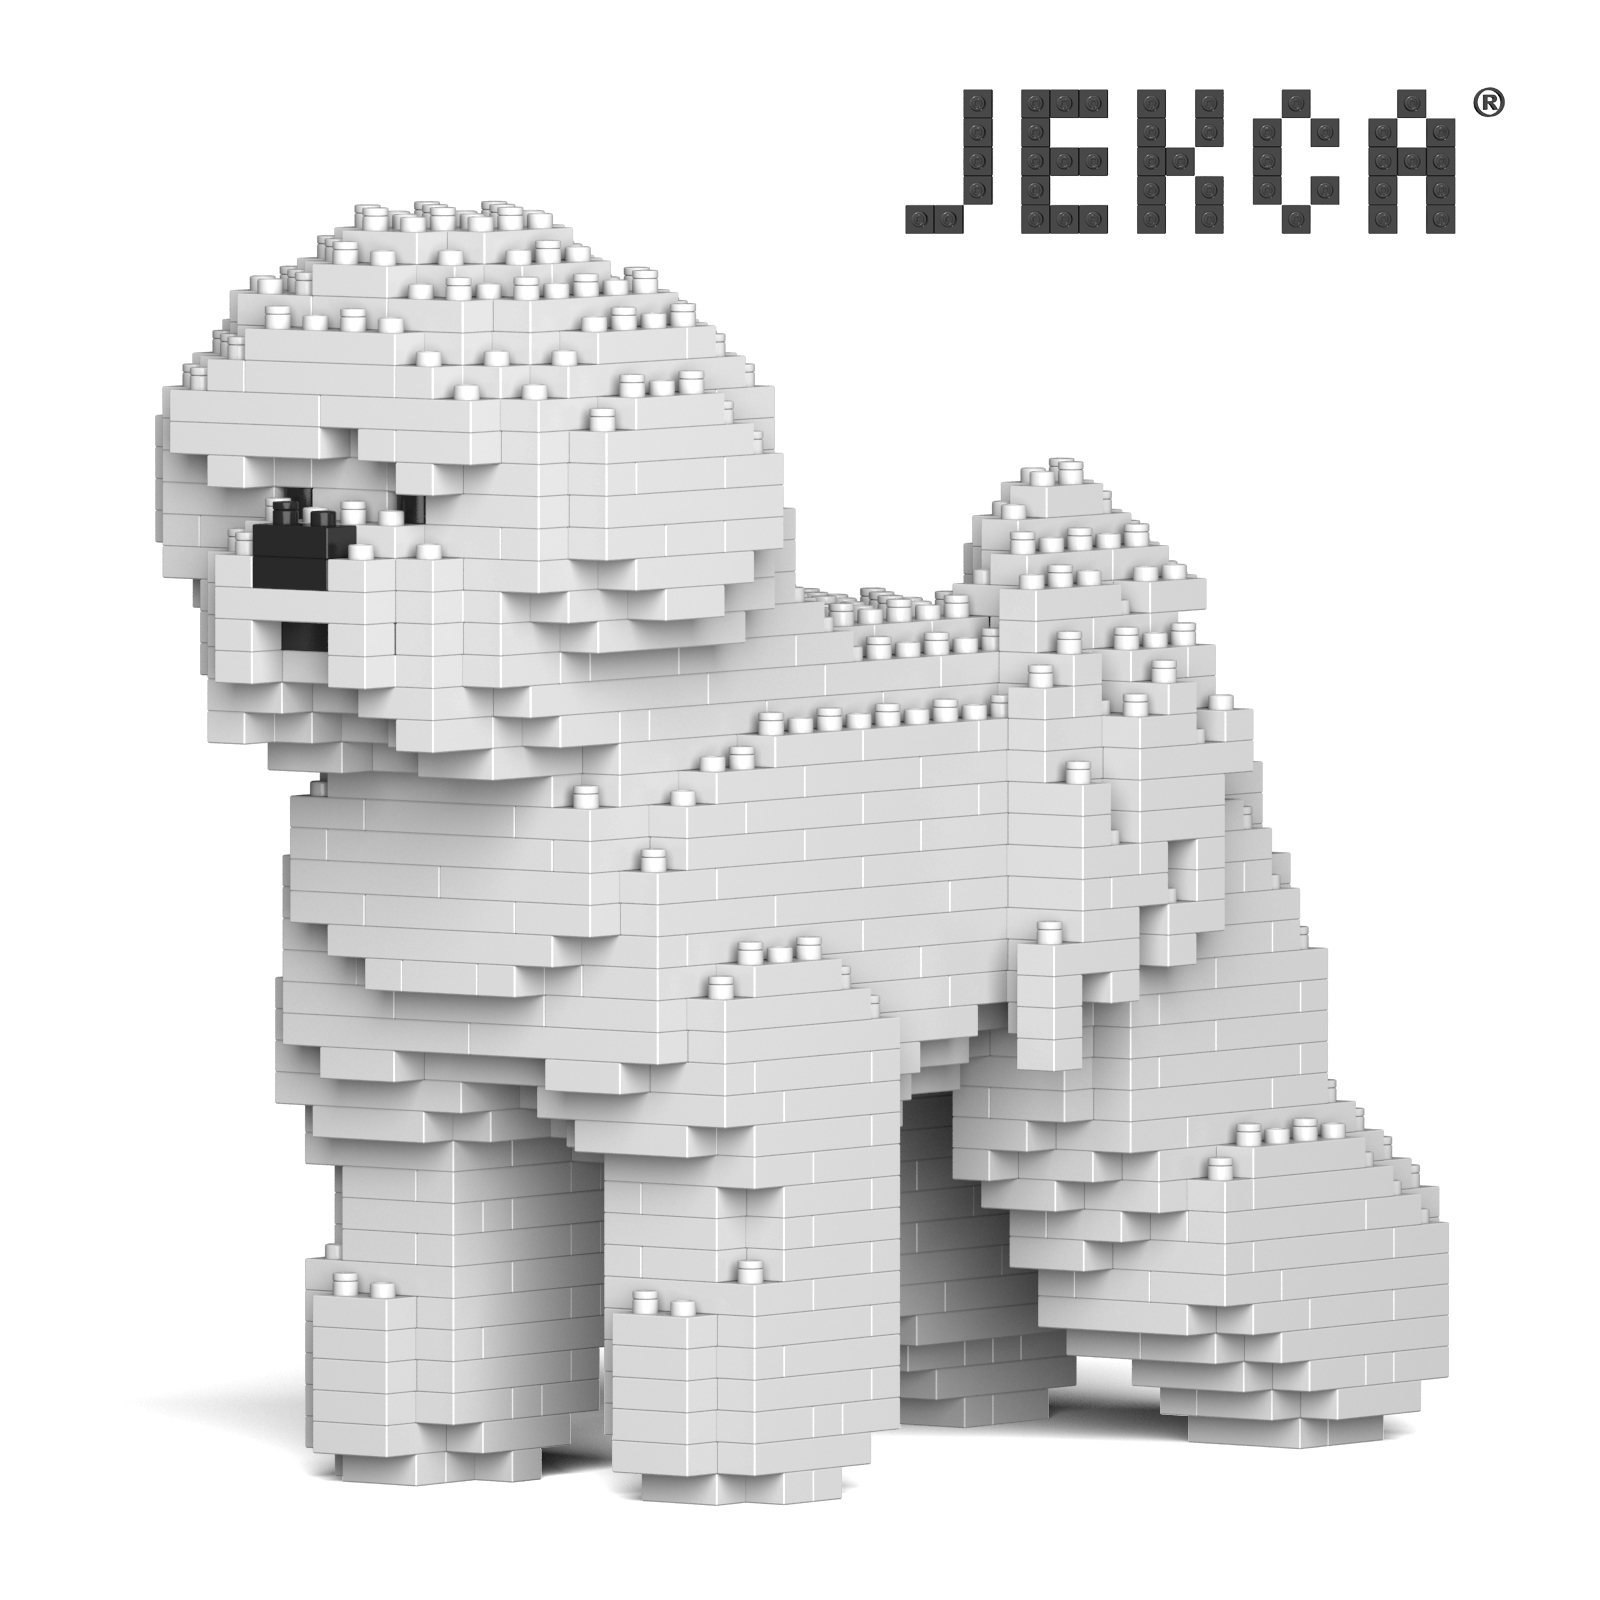 JEKCA Jakob 곰 개 마이크로 드릴링 플러그인 빌딩 블록 애완 동물 개 용품 어린이 교육 장난감 생일 선물